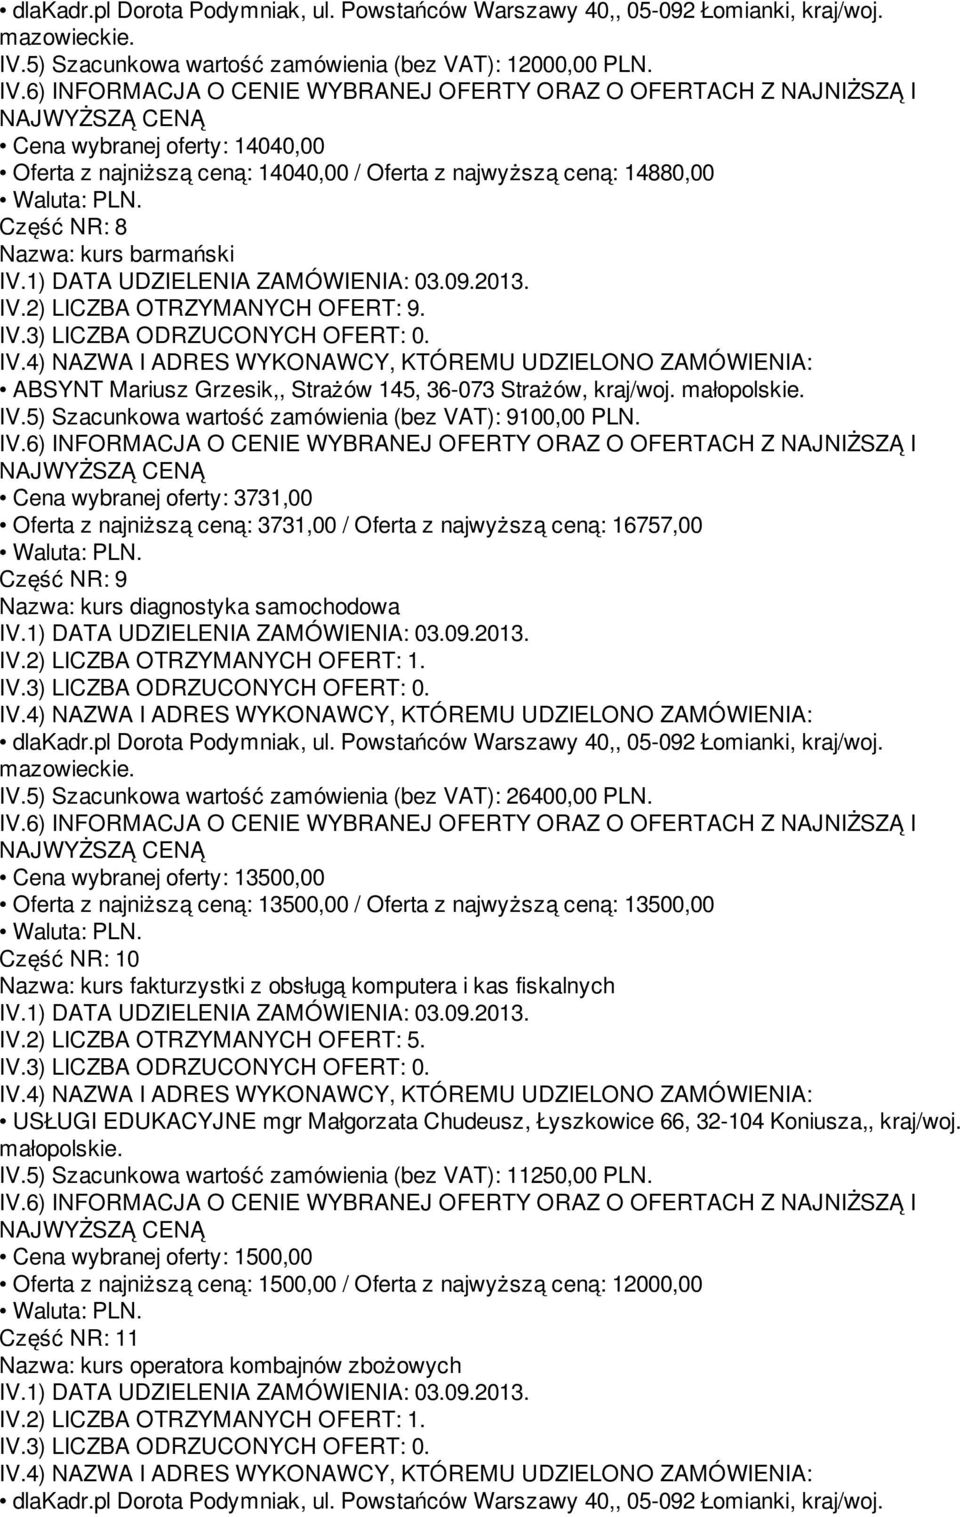 ABSYNT Mariusz Grzesik,, Strażów 145, 36-073 Strażów, kraj/woj. IV.5) Szacunkowa wartość zamówienia (bez VAT): 9100,00 PLN.